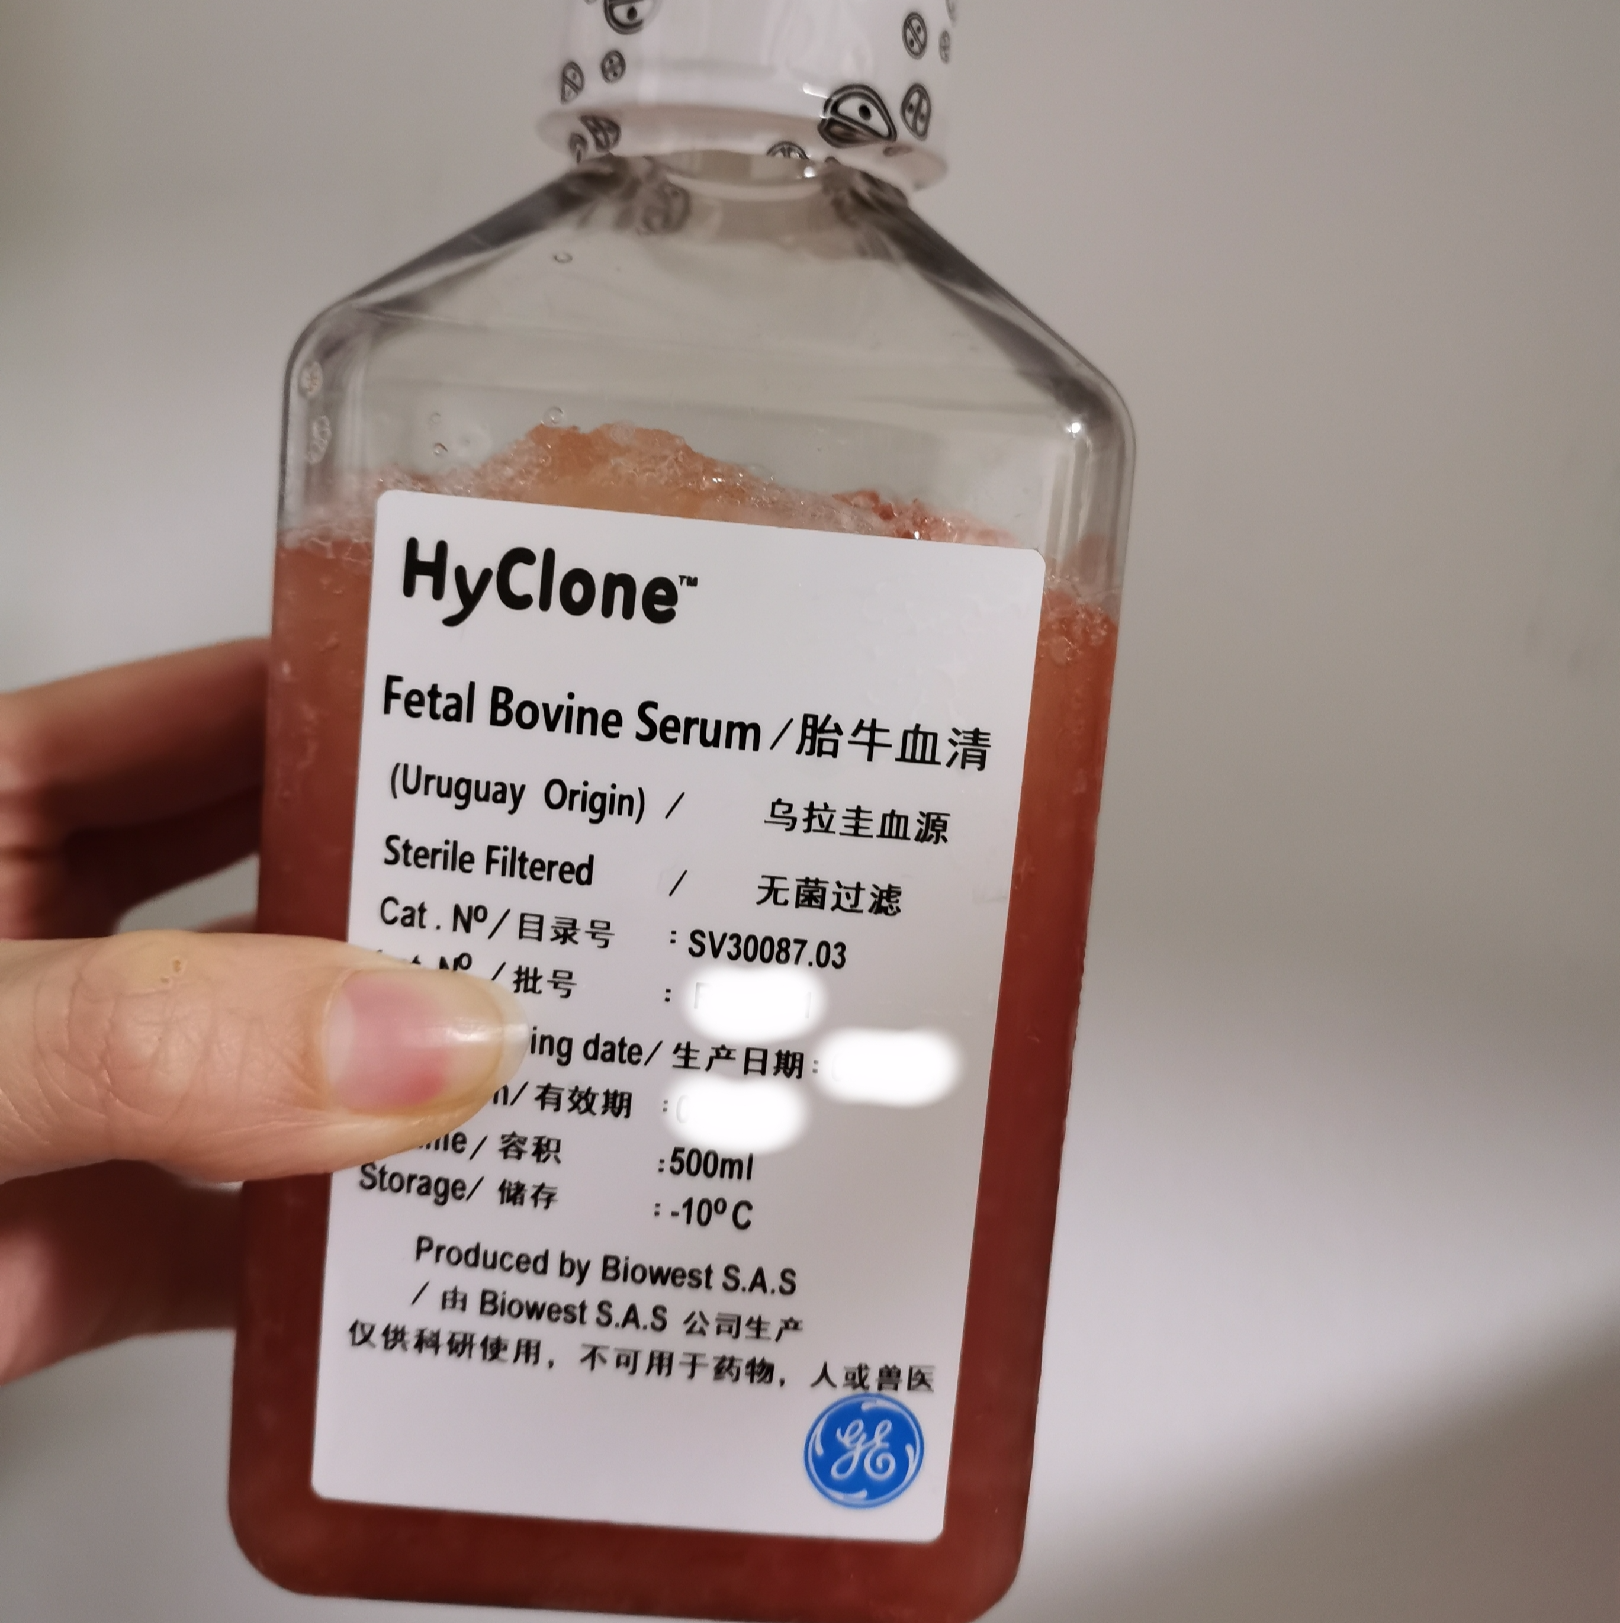 间充质干细胞专用胎牛血清 Hyclone澳洲源（货号：SH30084.03M）